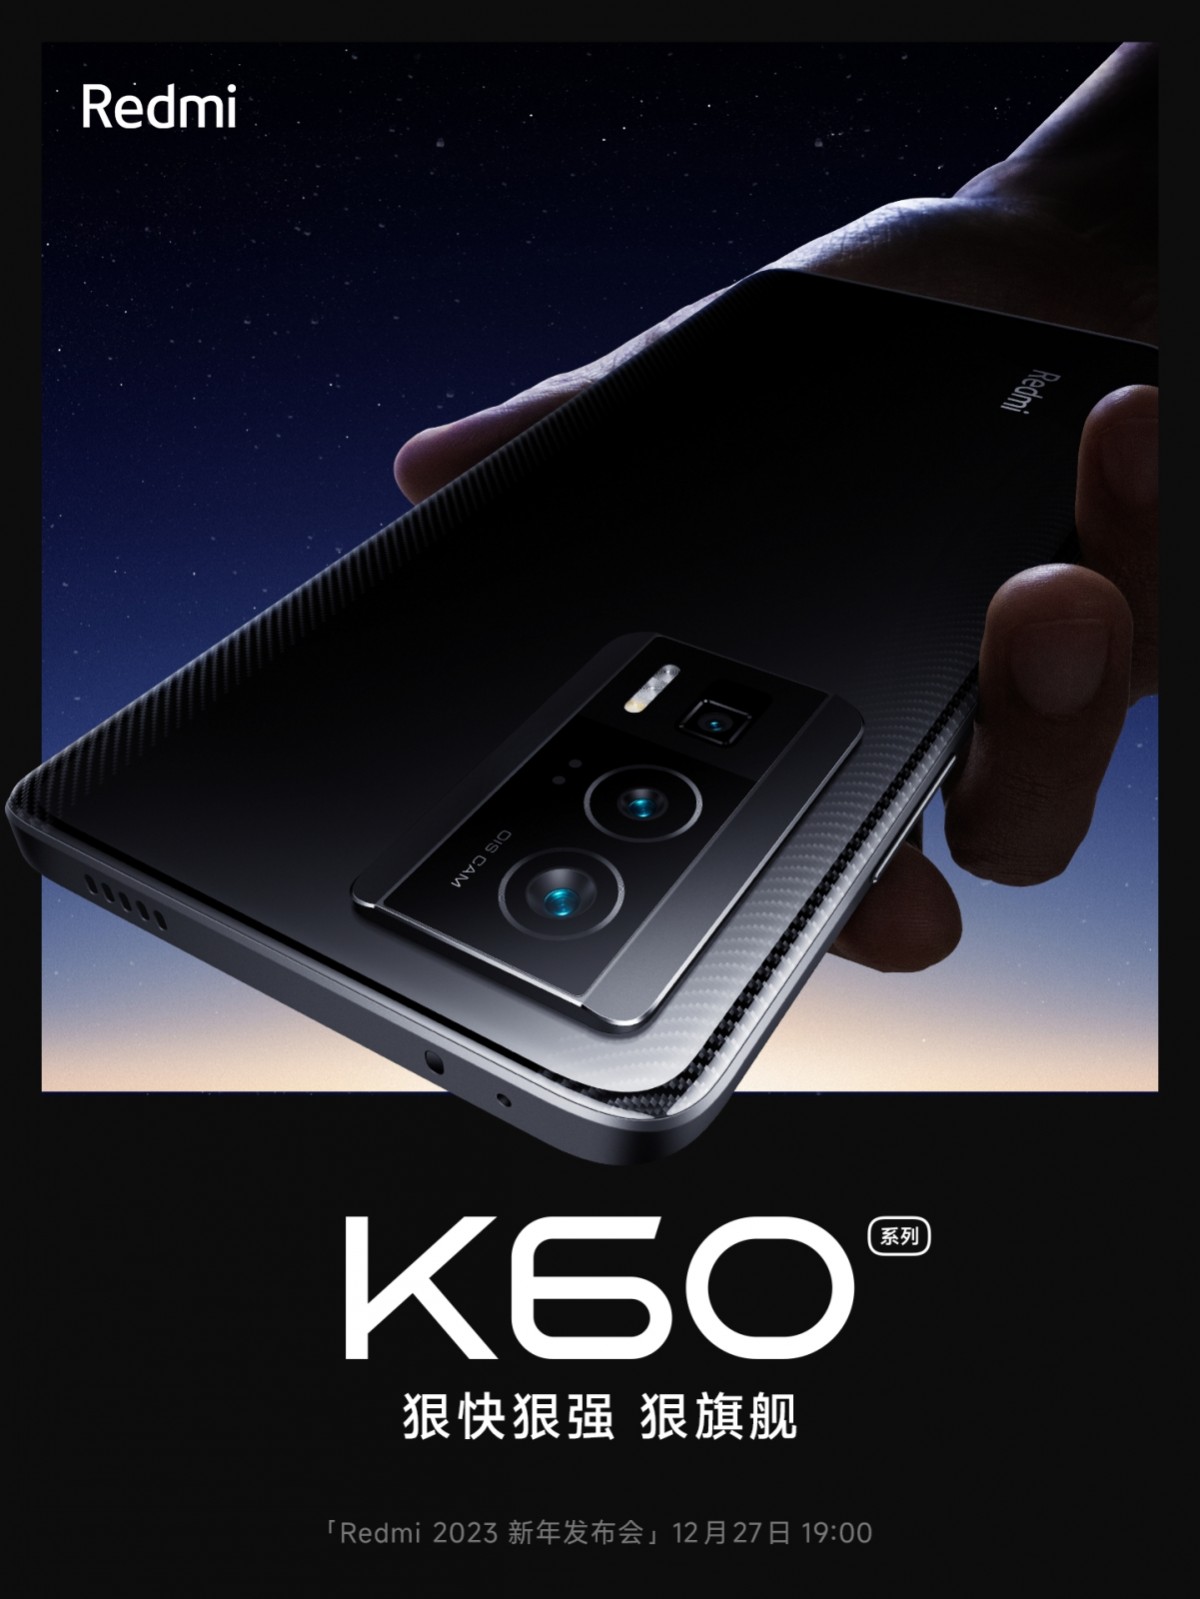 شاومي تعلن رسمياً عن سلسلة هواتف Redmi K60